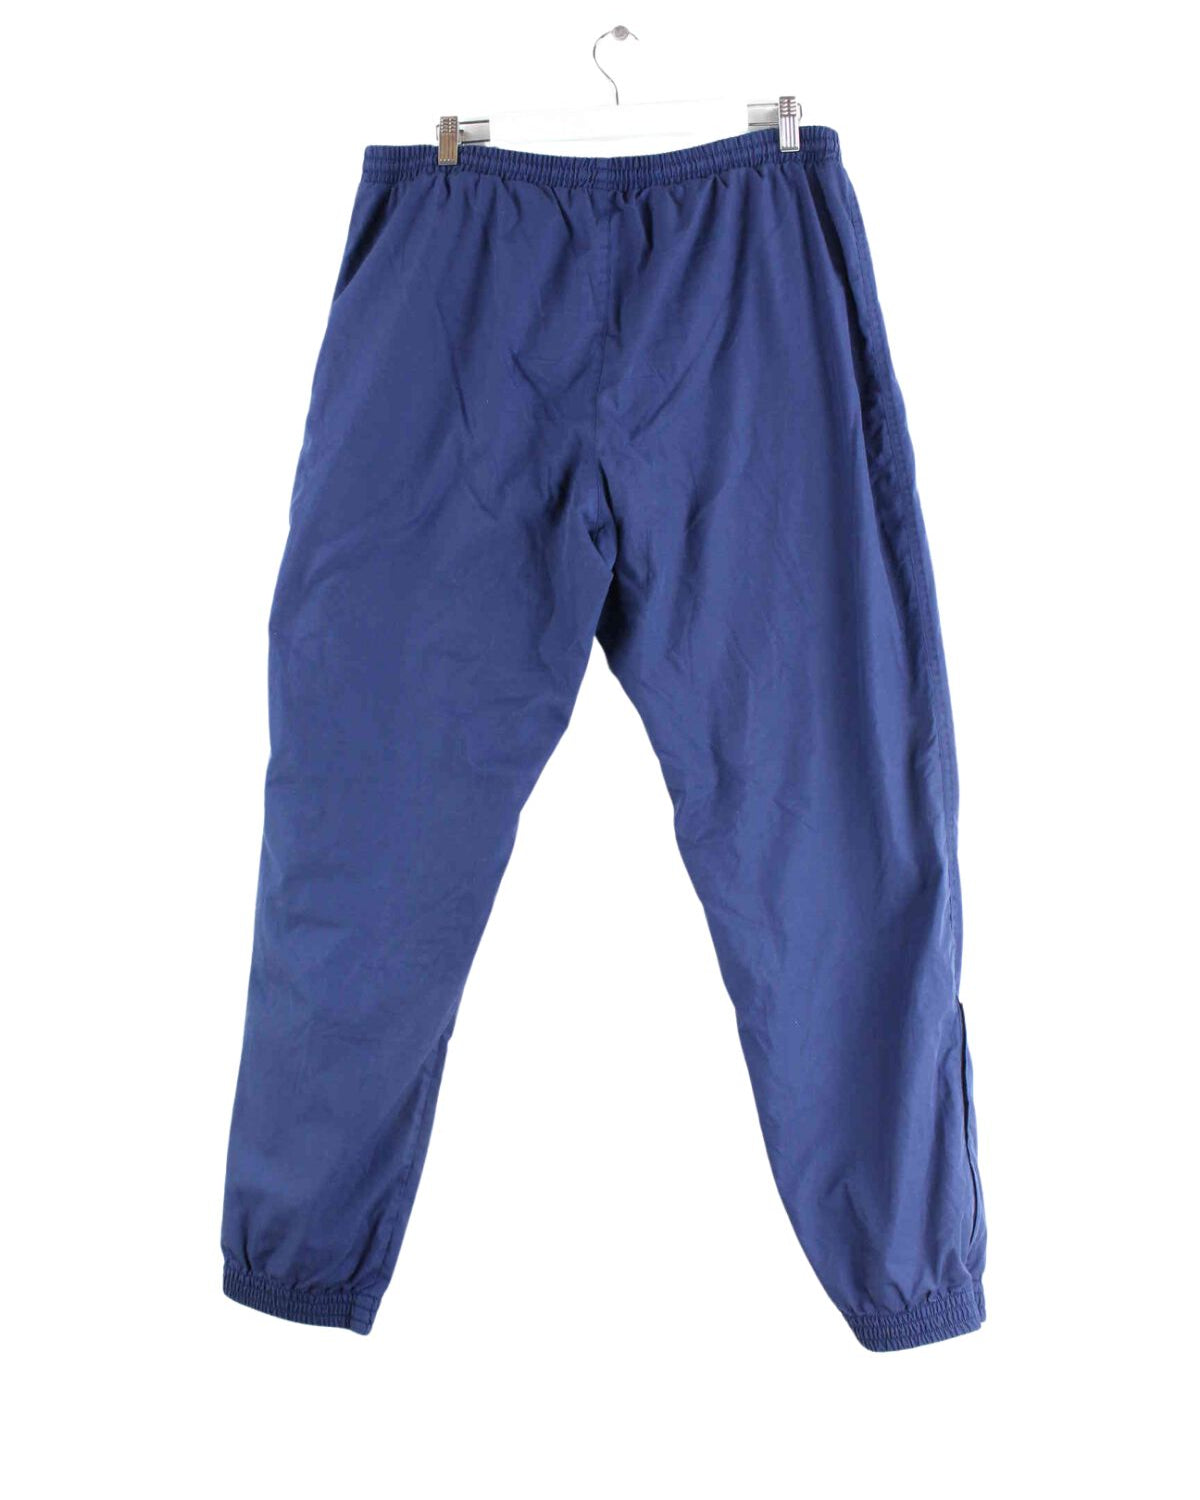 Adidas 90s Vintage Performance Track Pants Blau L (back image)